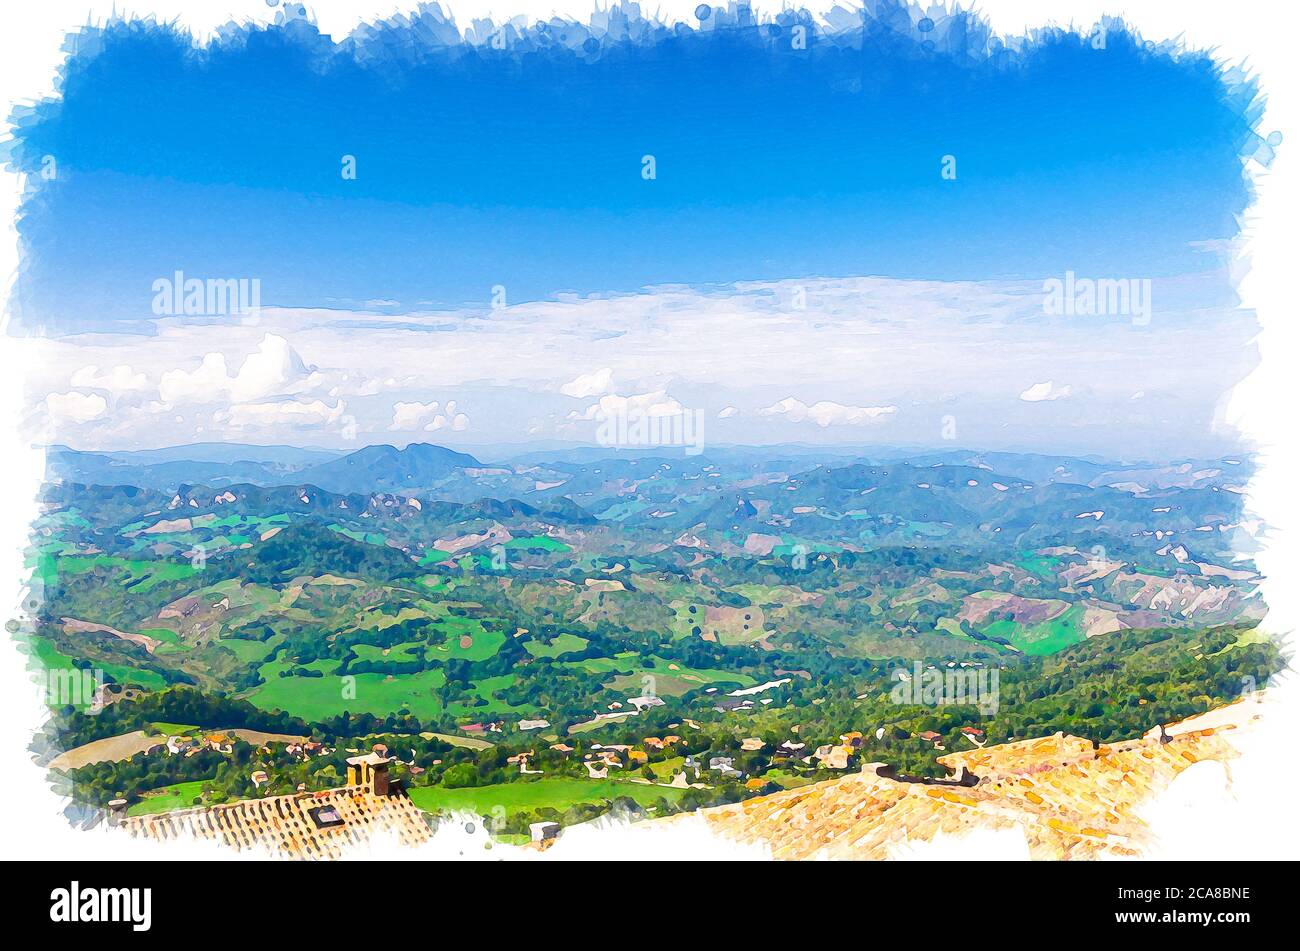 Aquarell Zeichnung von Luft oben Panoramablick auf Landschaft mit Tal, grünen Hügeln, Feldern und Dörfern der Republik San Marino Vorstadt mit blauen Himmel weißen Wolken. Blick von der Festung San Marino. Stockfoto